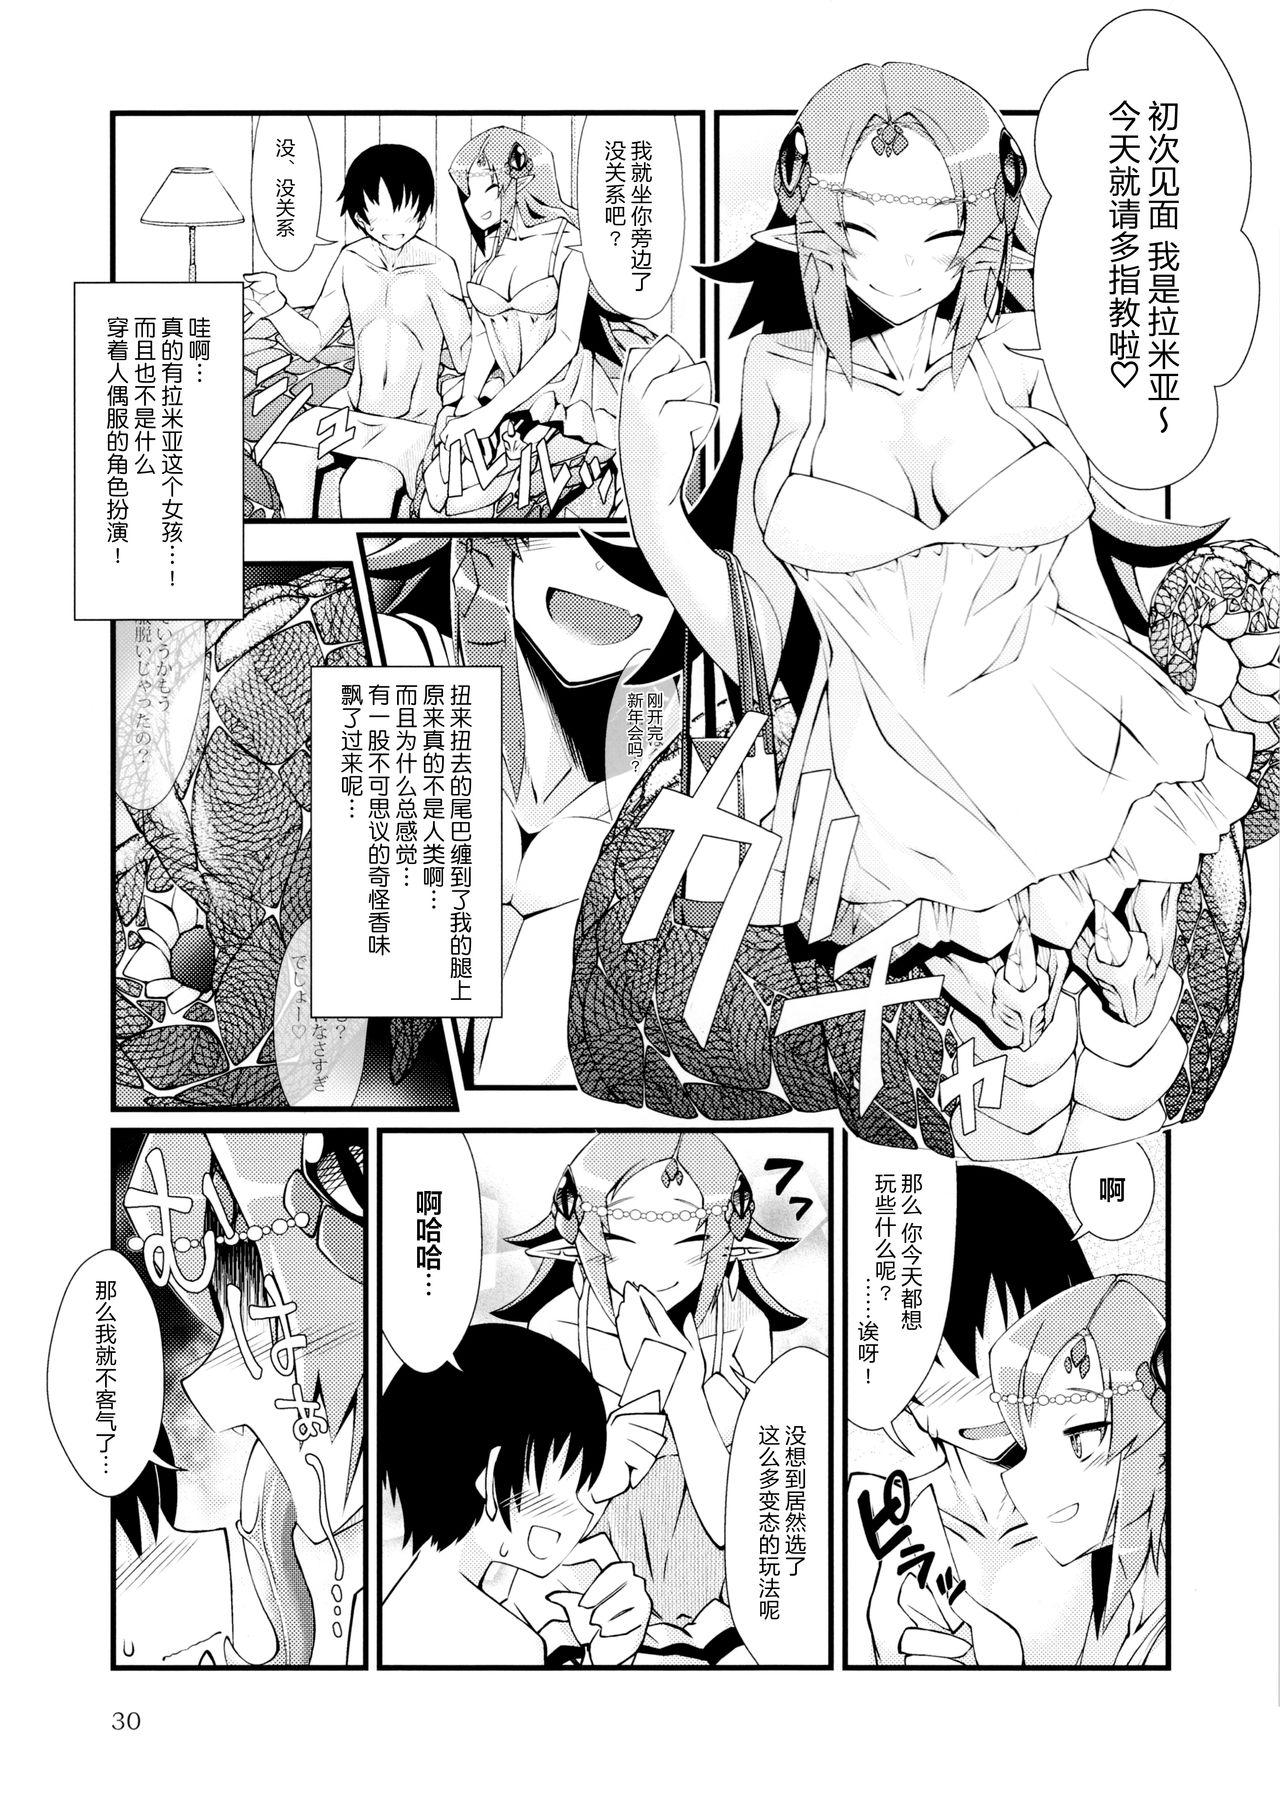 Amante 人外娘風俗店 - Original Anale - Page 2